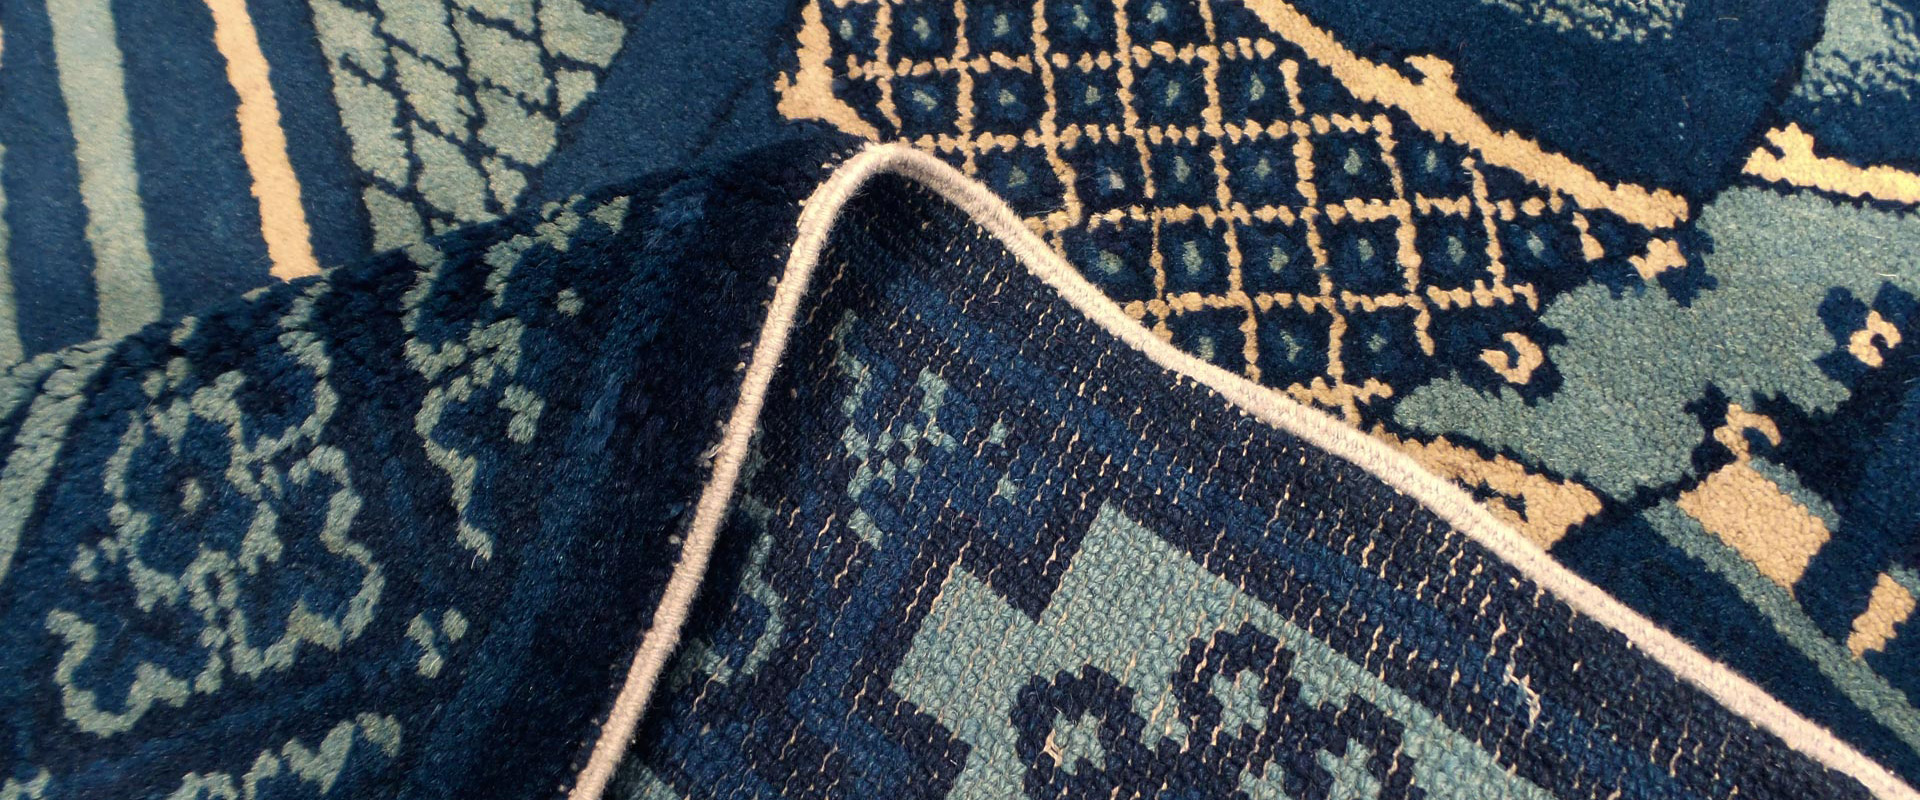 Nahaufnahme eines orientalischen Teppichs mit umgeschlagener Ecke, zeigt dunkelblaue und beige Muster auf türkisfarbenem Grund.